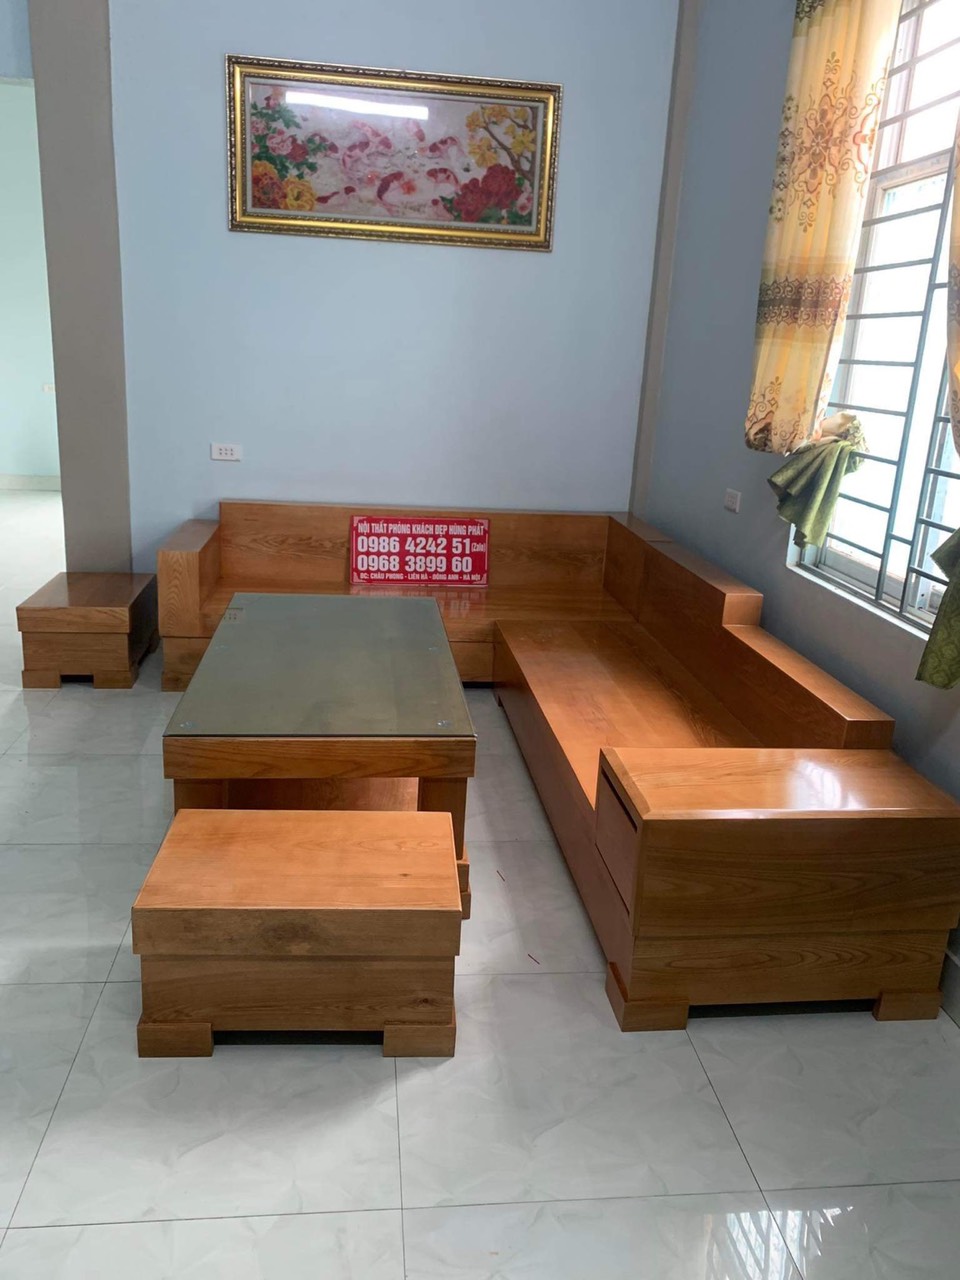 Bộ bàn ghế sofa góc hộp gỗ sồi là sự lựa chọn tuyệt vời cho không gian sống hiện đại và sang trọng. Với chất liệu gỗ sồi cao cấp và thiết kế đẹp mắt, Bộ bàn ghế sofa góc hộp sẽ mang đến cho bạn không gian sống đẳng cấp và sang trọng.